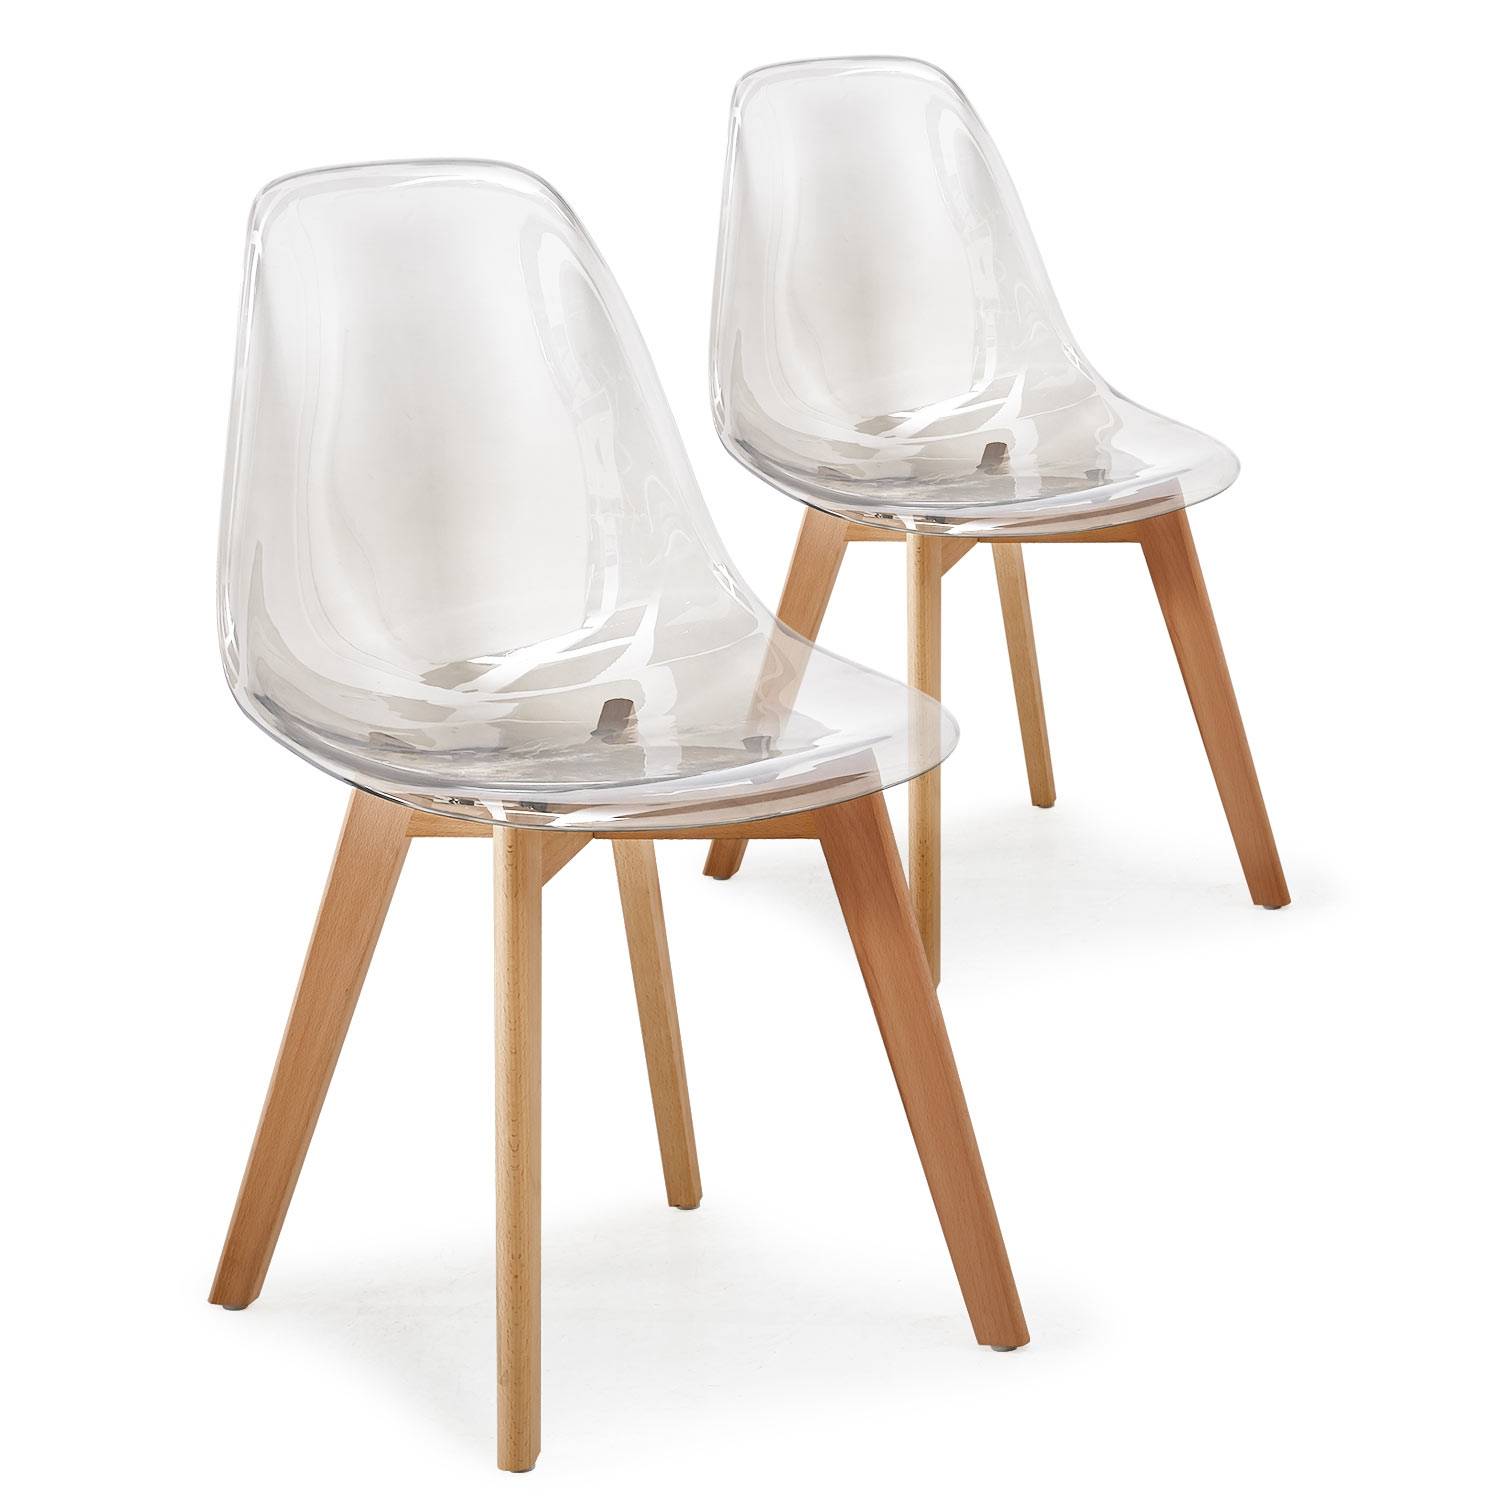 synoniemenlijst Kosten Begrijpen Set van 2 Scandinavische Larry Plexi transparante stoelen